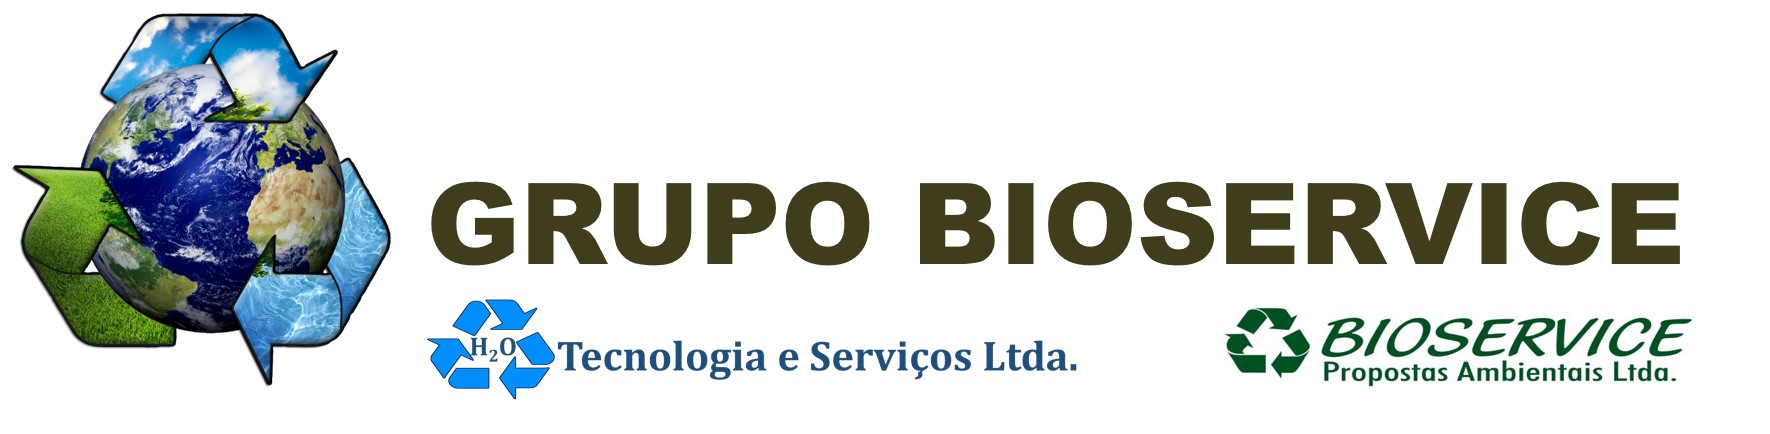 Grupo Bioservice Oficial